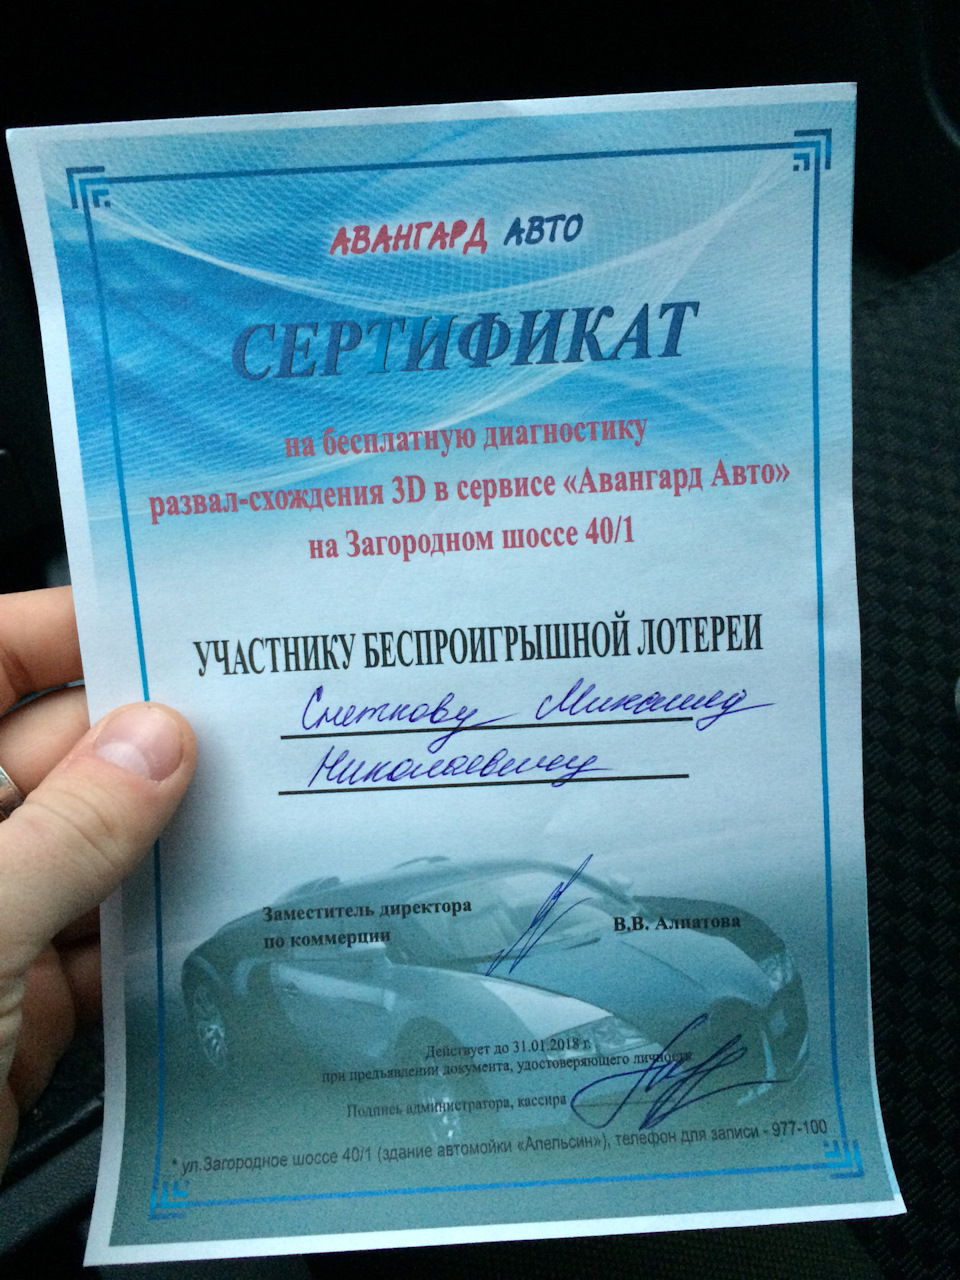 Сертификат на машину